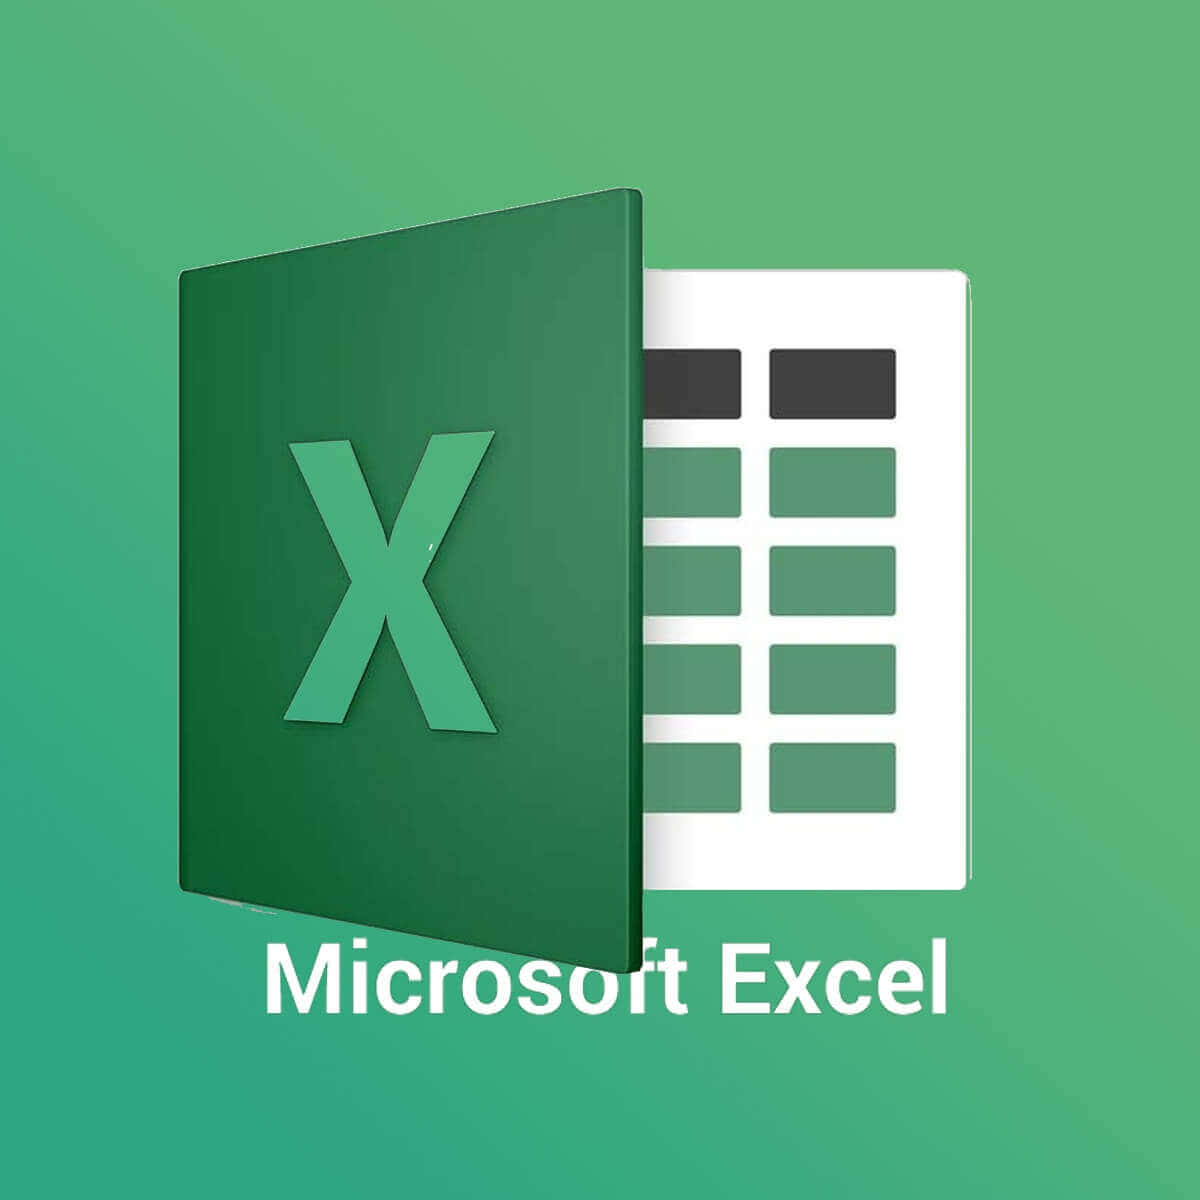 Microsoftexcel-logo Mit Grünem Hintergrund.